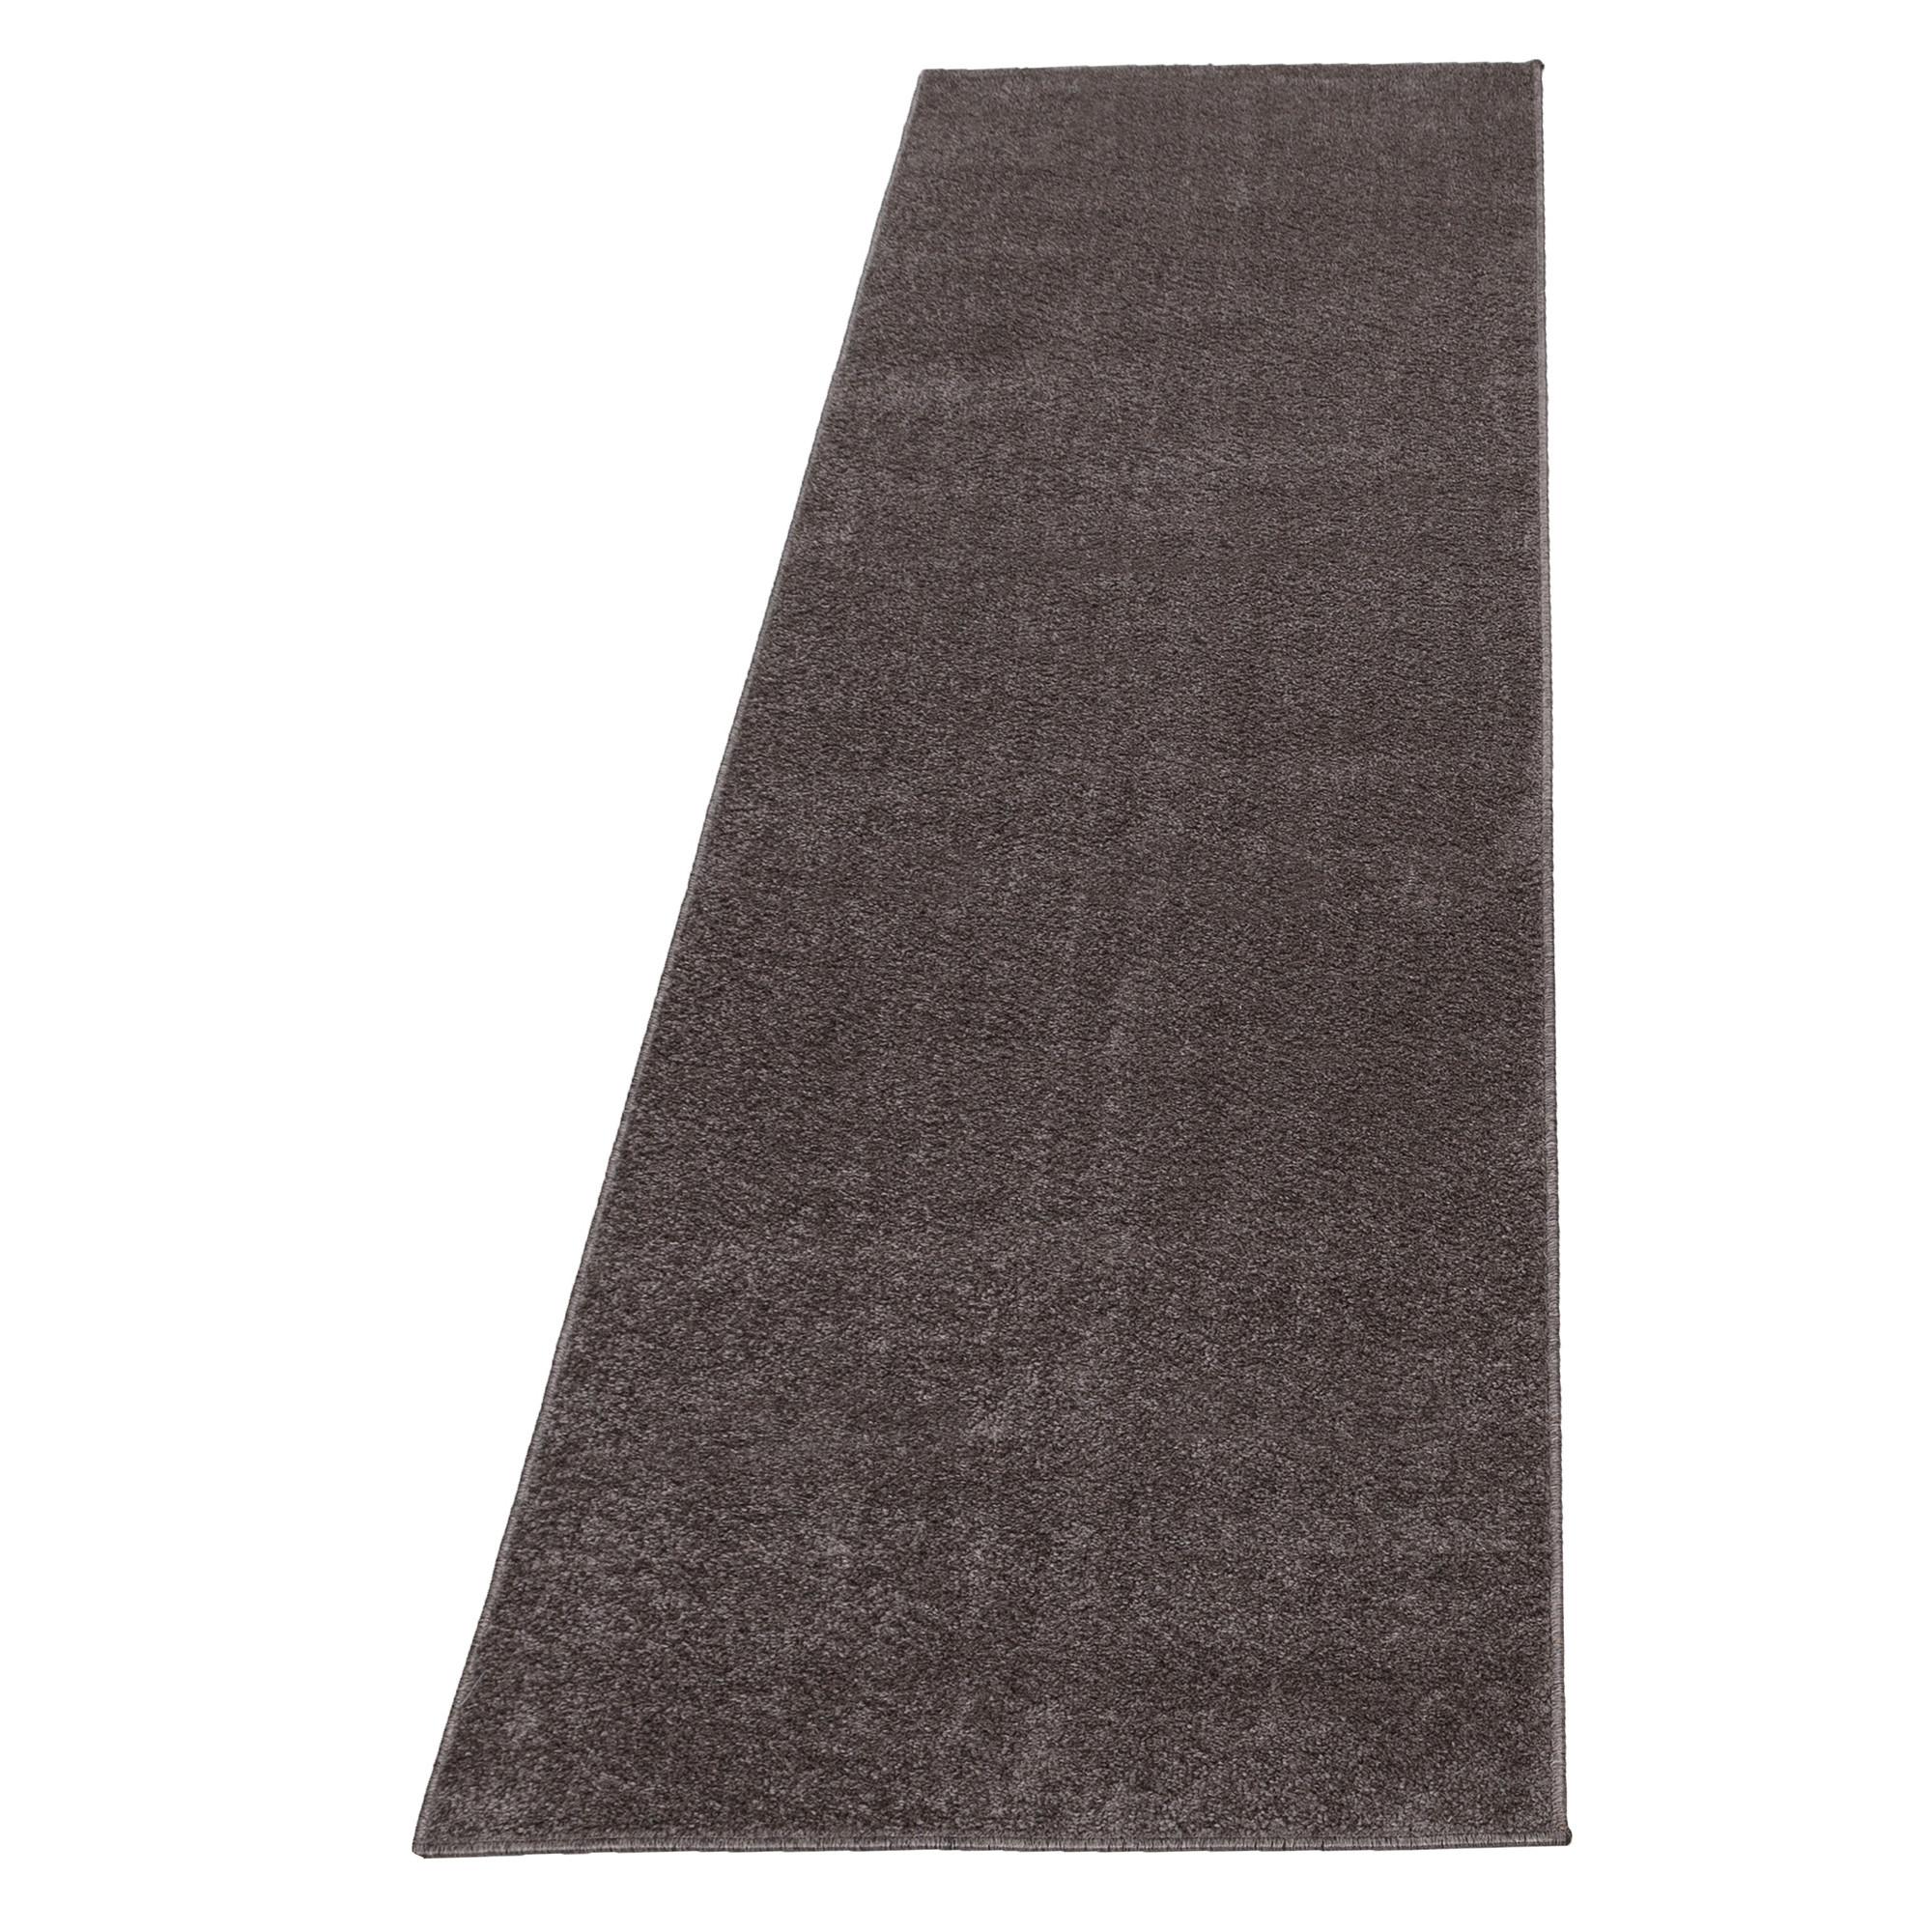 Teppich Läufer Hellbraun Ata 80x250 cm - Hellbraun, Design, Textil (80/250cm) - Novel